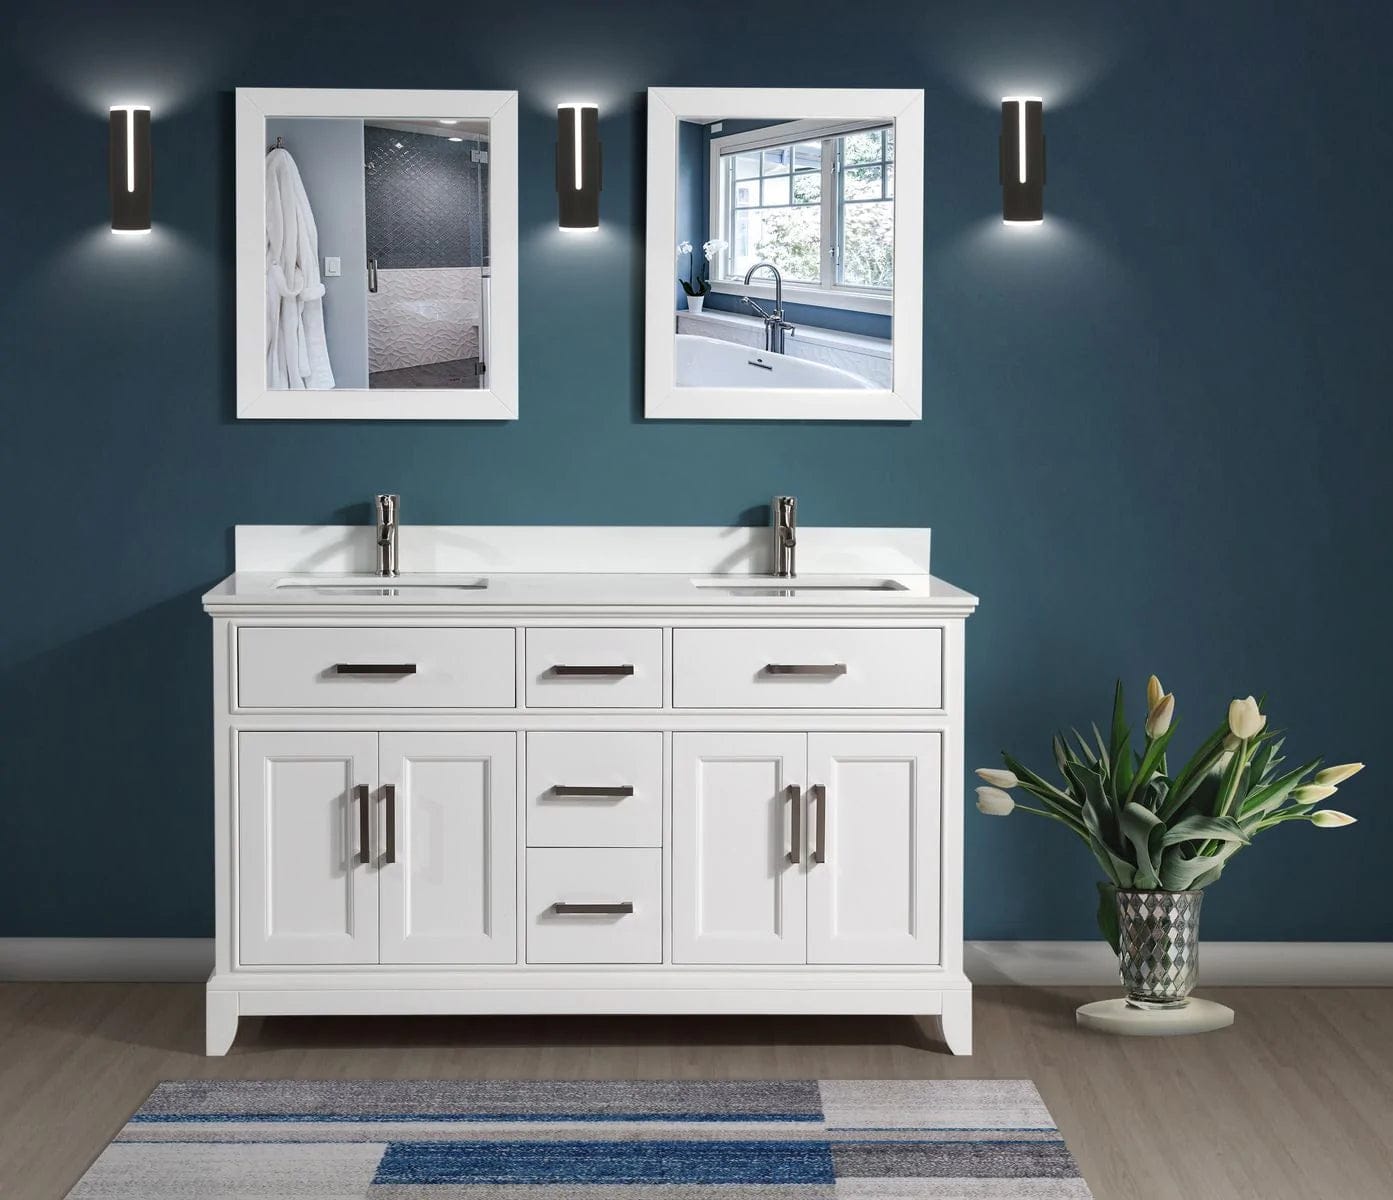 72 in. Double Sink Bathroom Vanity Set in White - Decohub Home